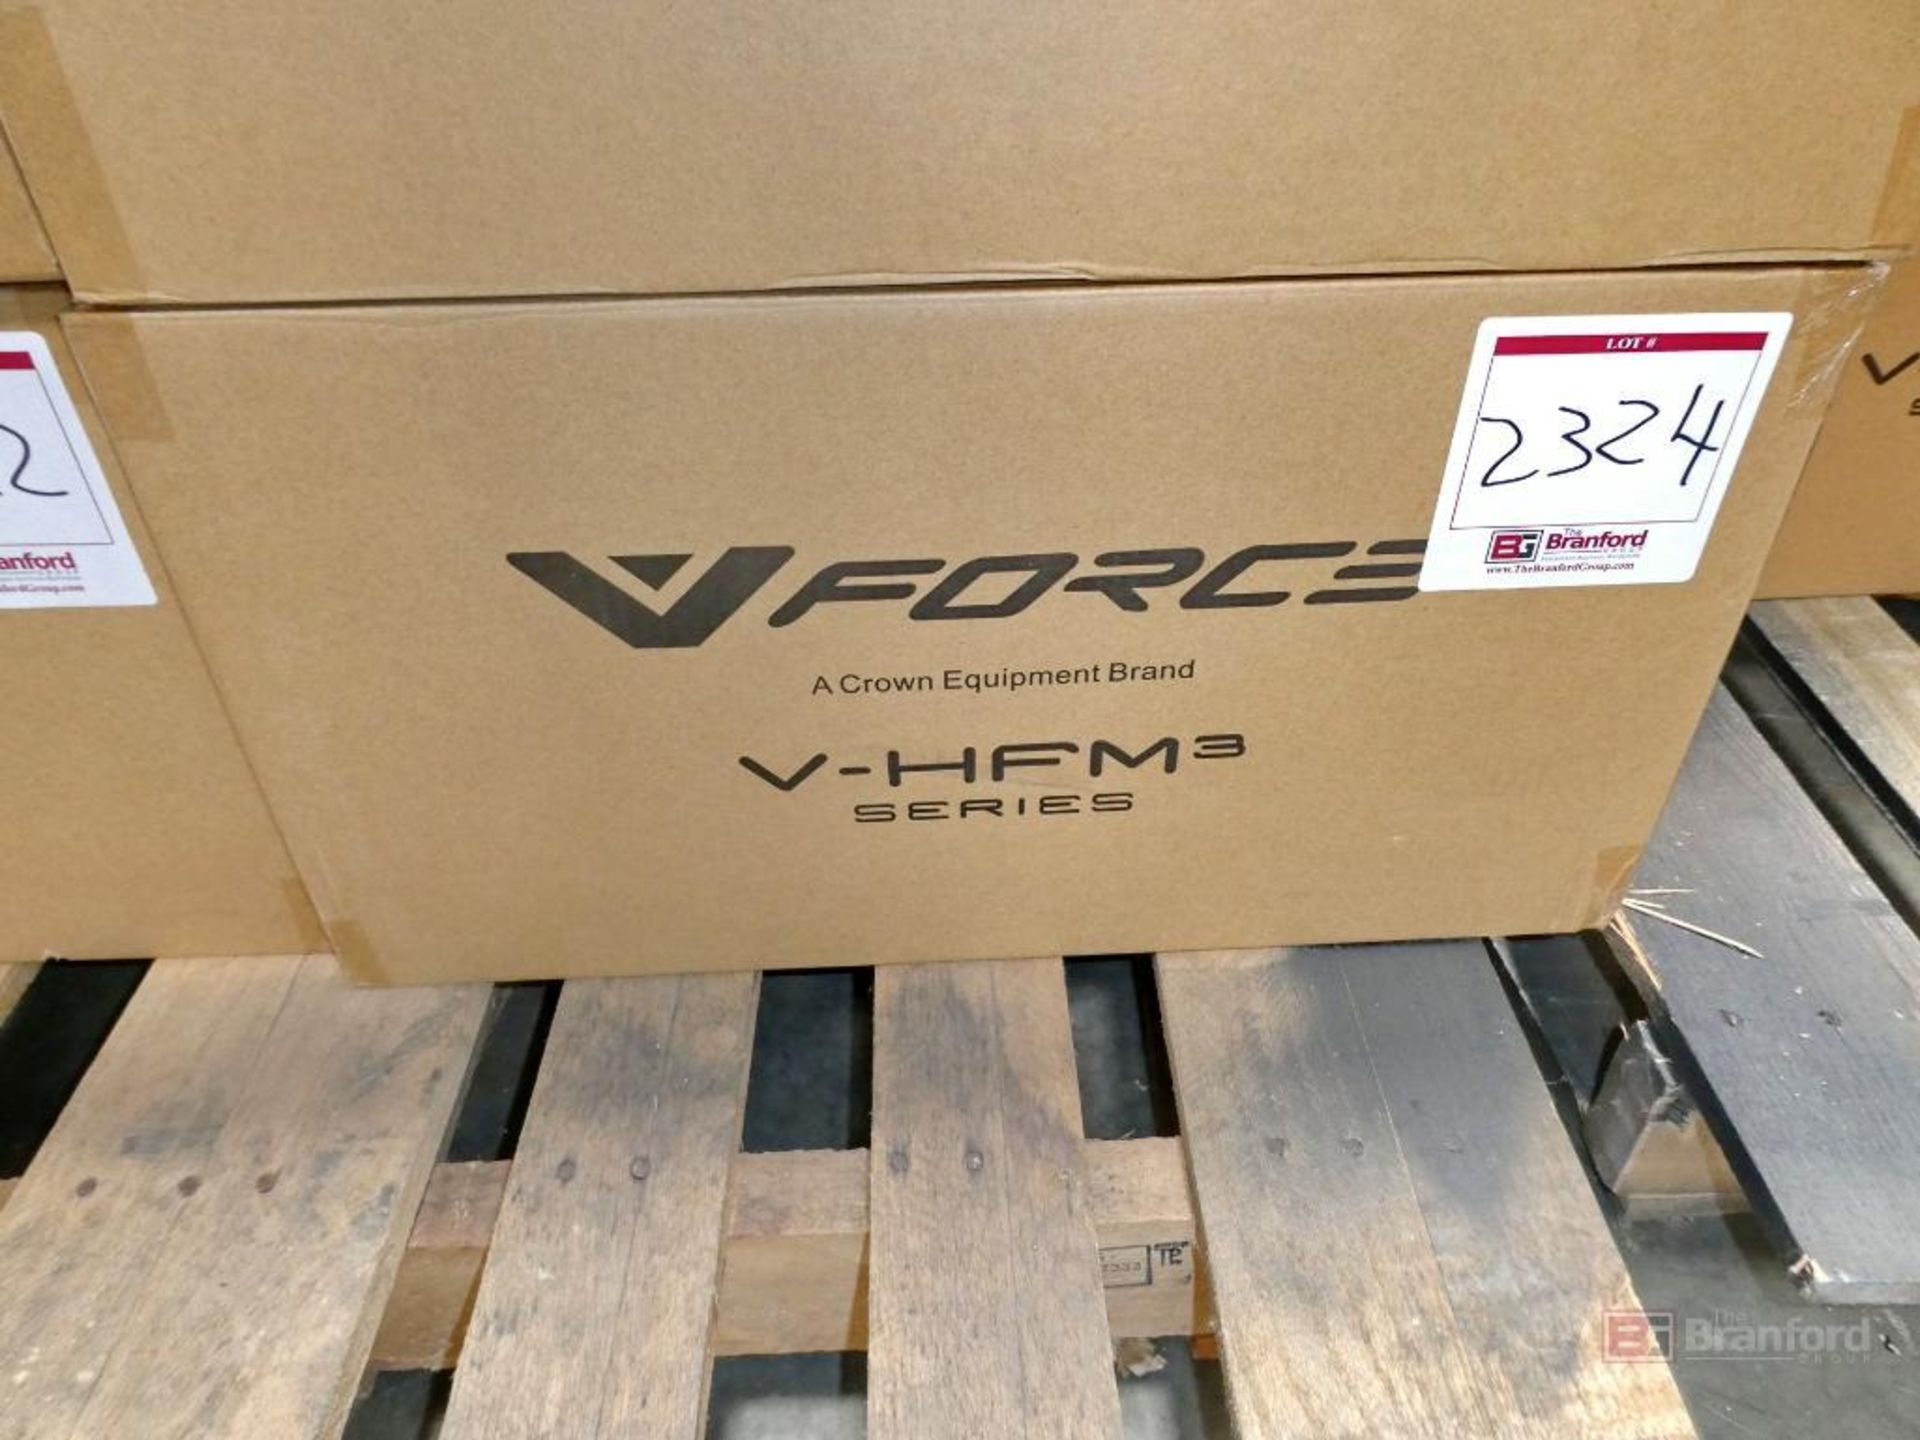 V-Force Model FS3-MP344-3, Forklift Multi-Voltage Battery Charger